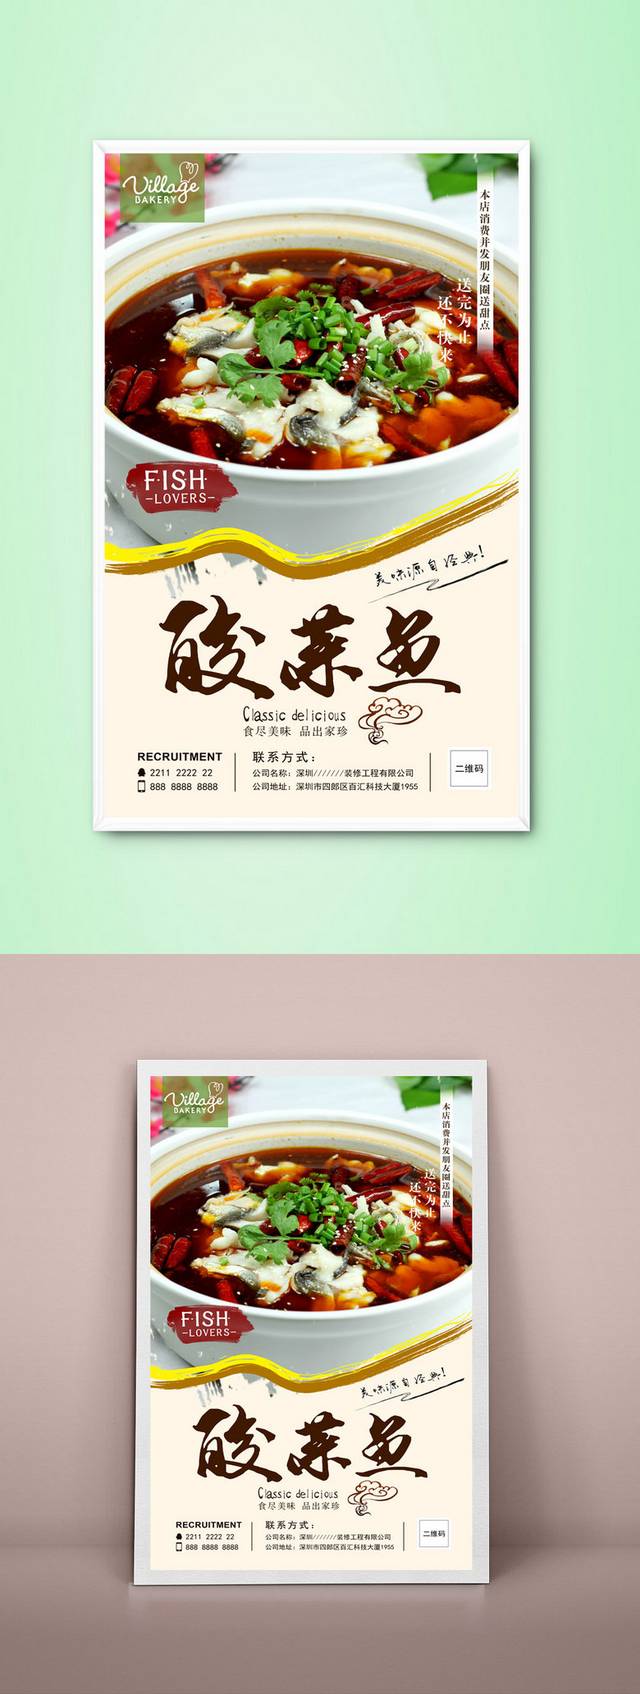 高档酸菜鱼宣传海报设计模板